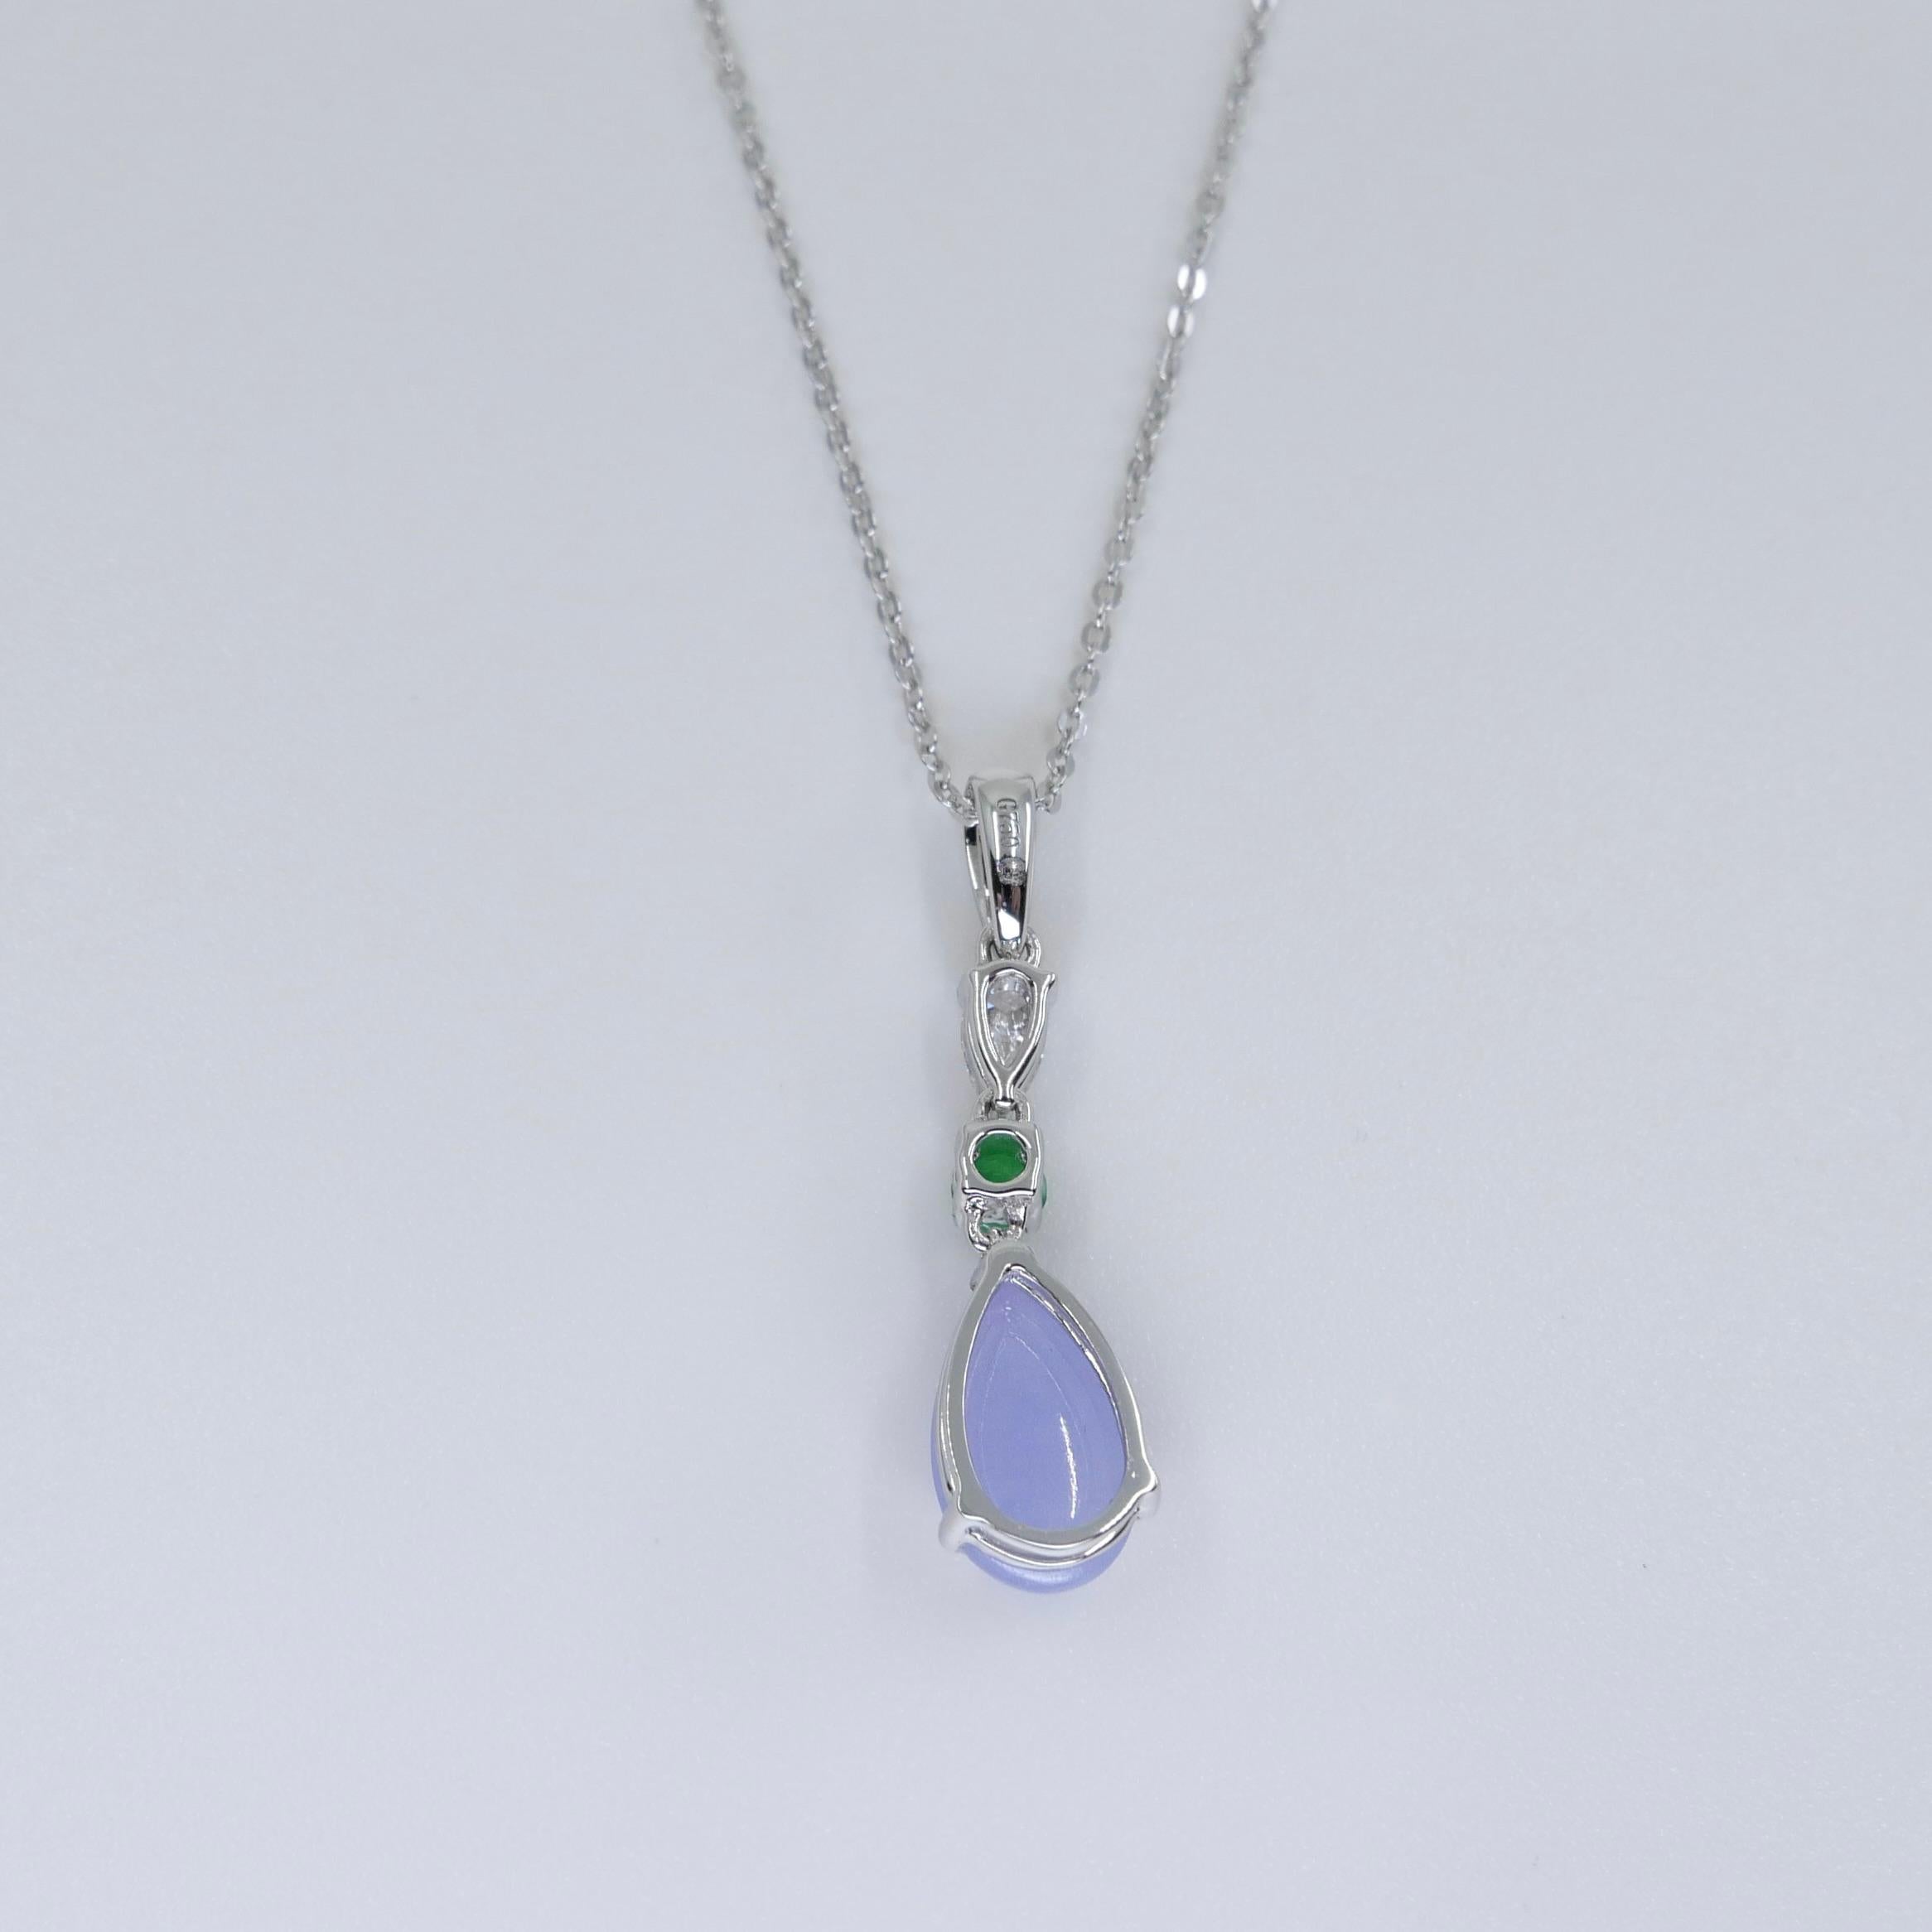 Certified 1.95 Carats Lavender Jade & Pear Cut Diamond Drop Pendant Necklace For Sale 1